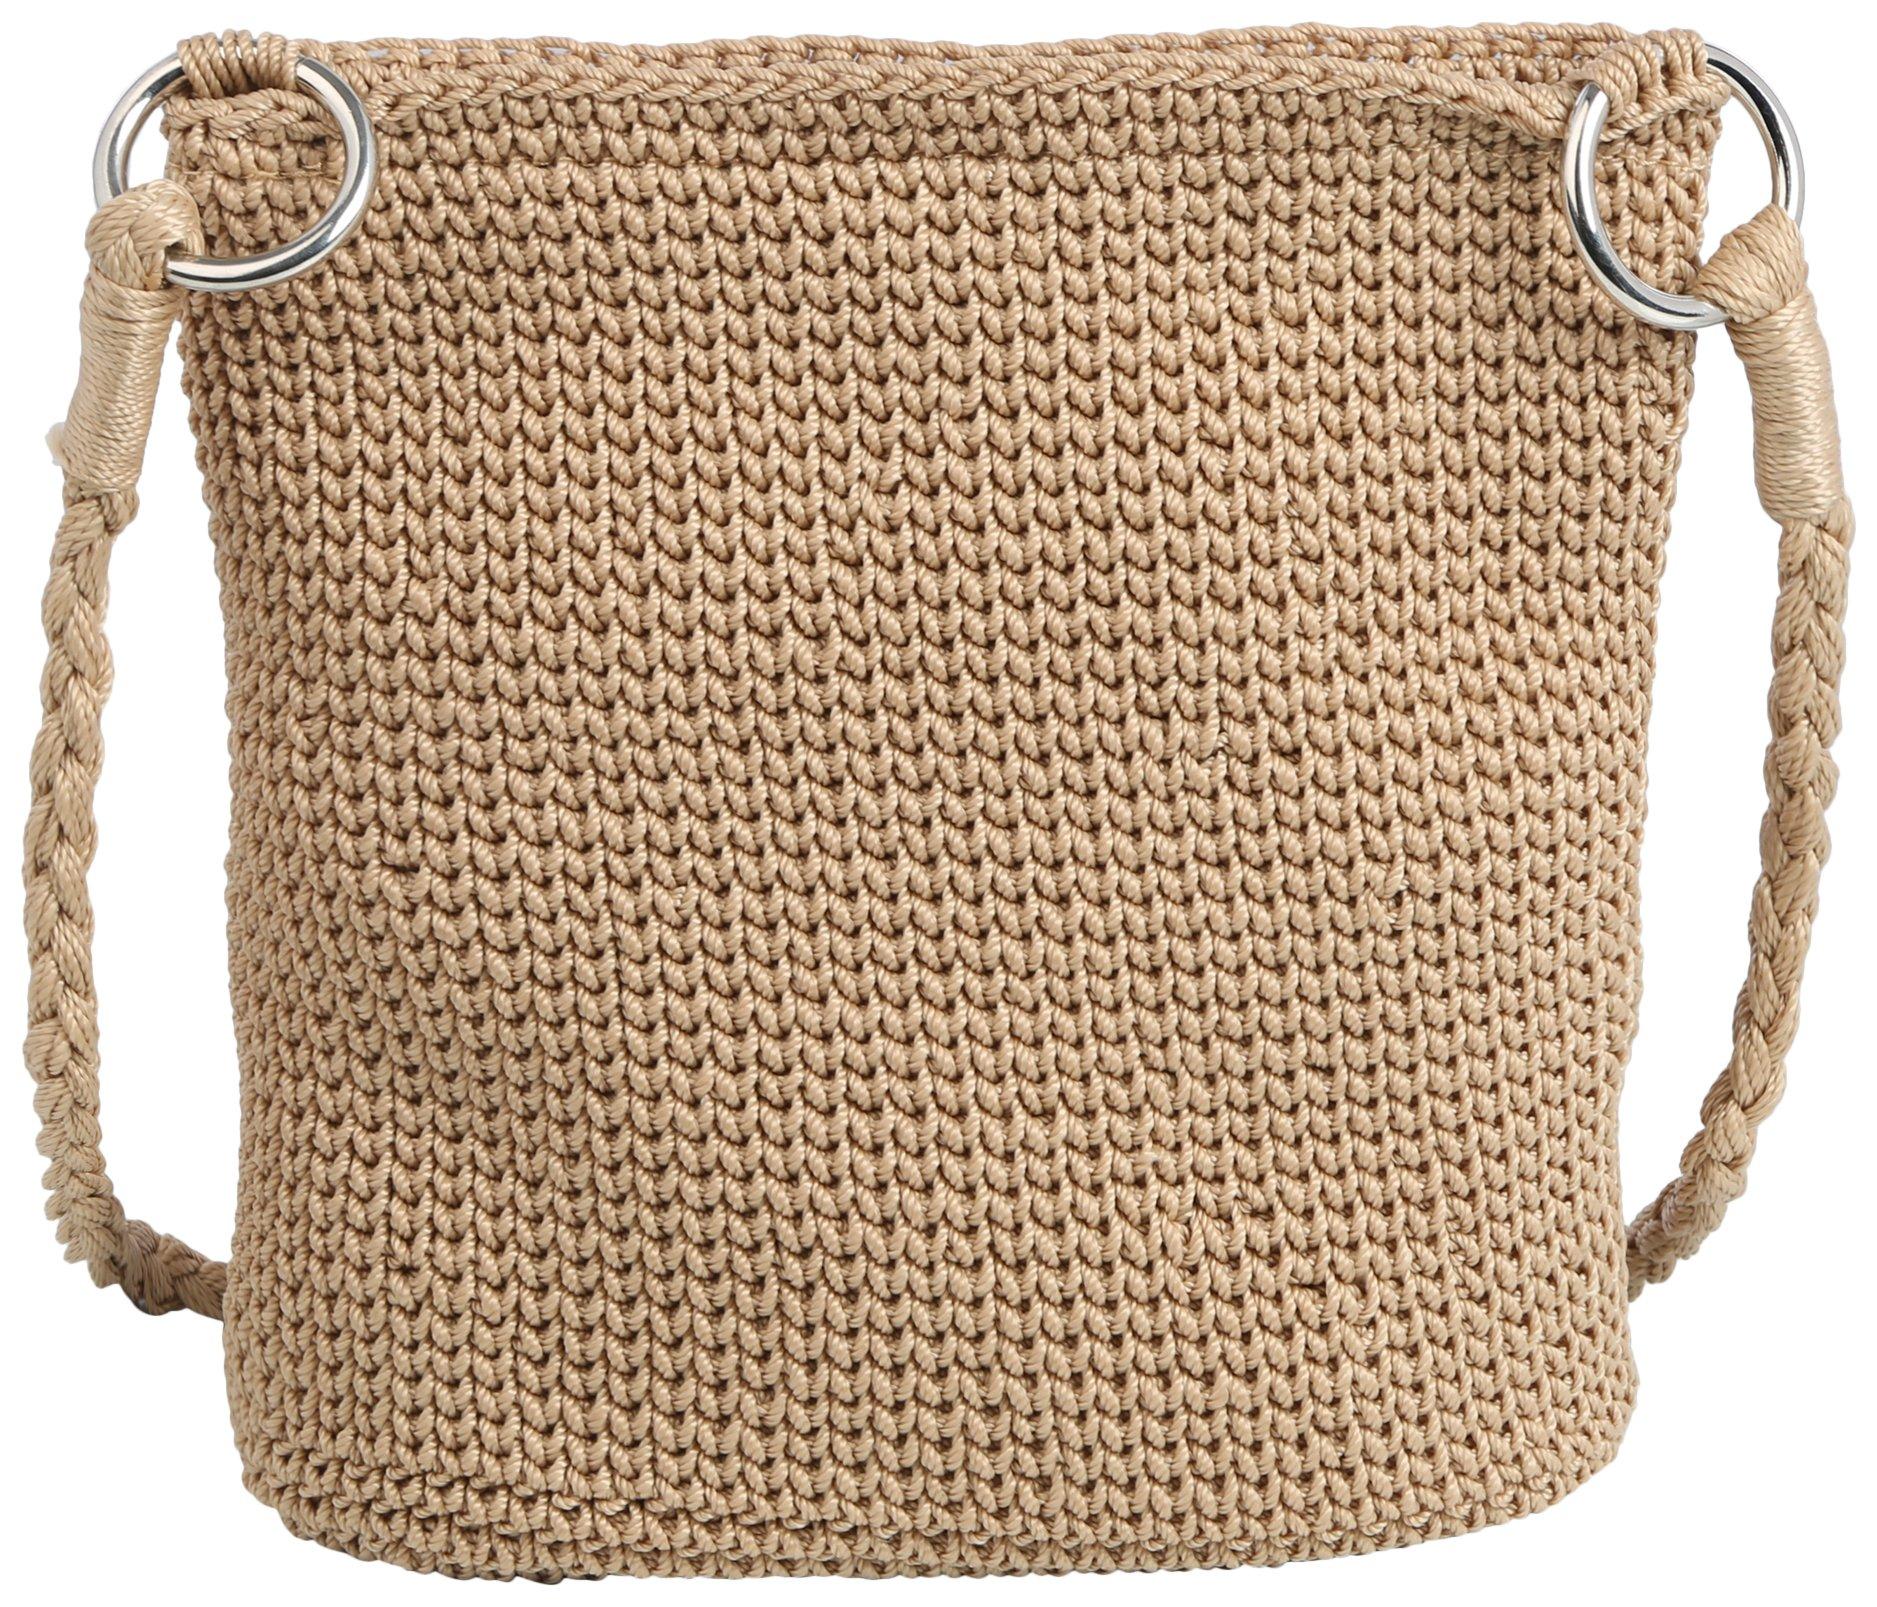 Straw Studios Daytrip Crochet Solid Crossbody Bag